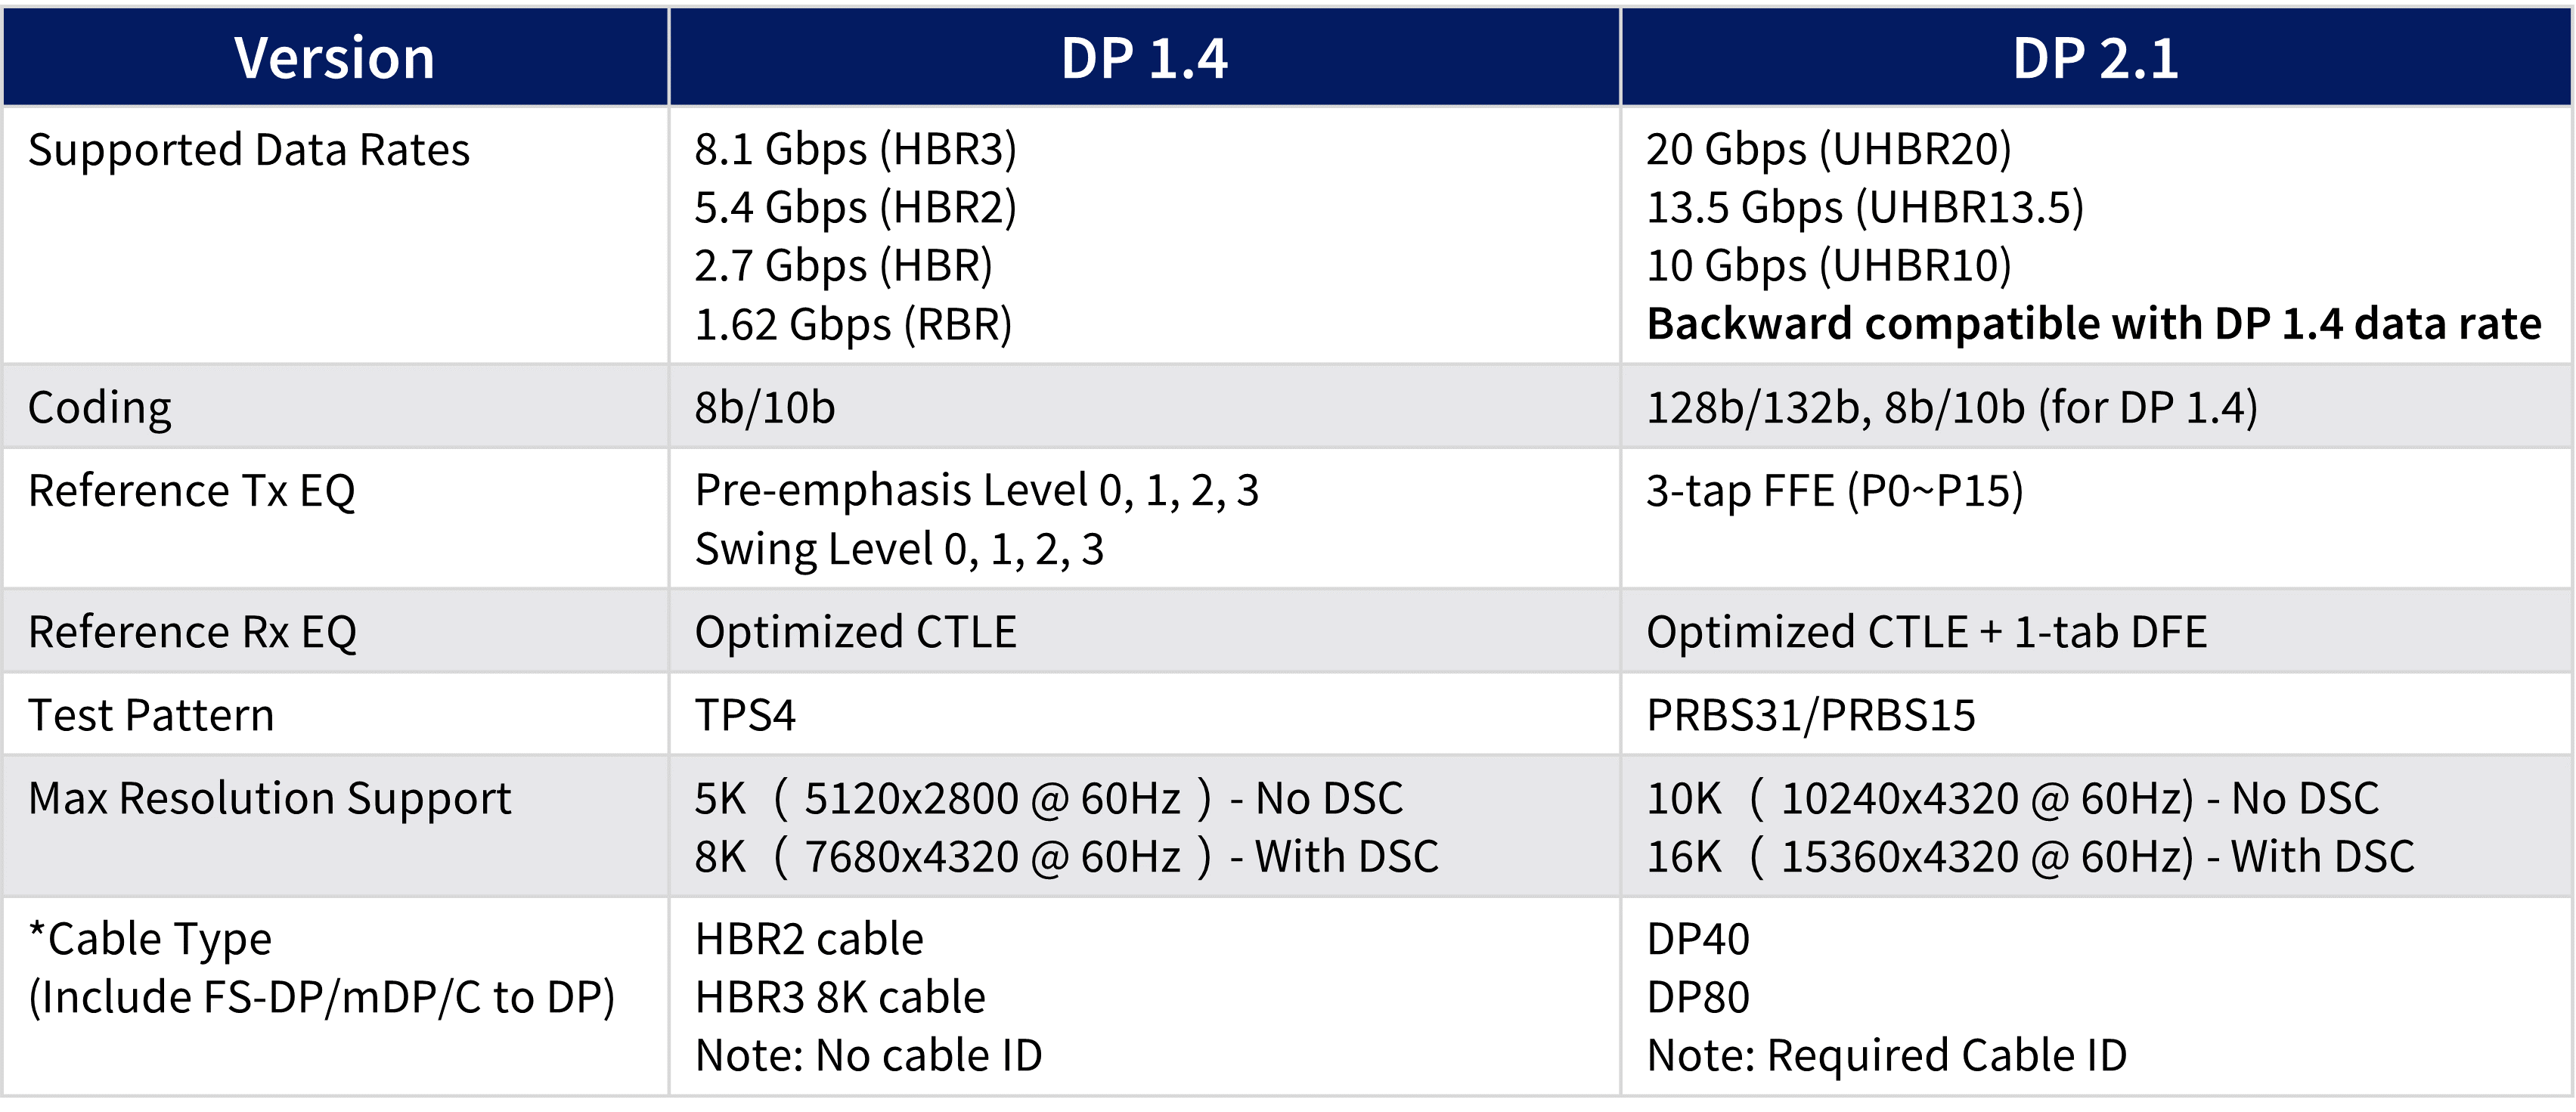 dp2.1